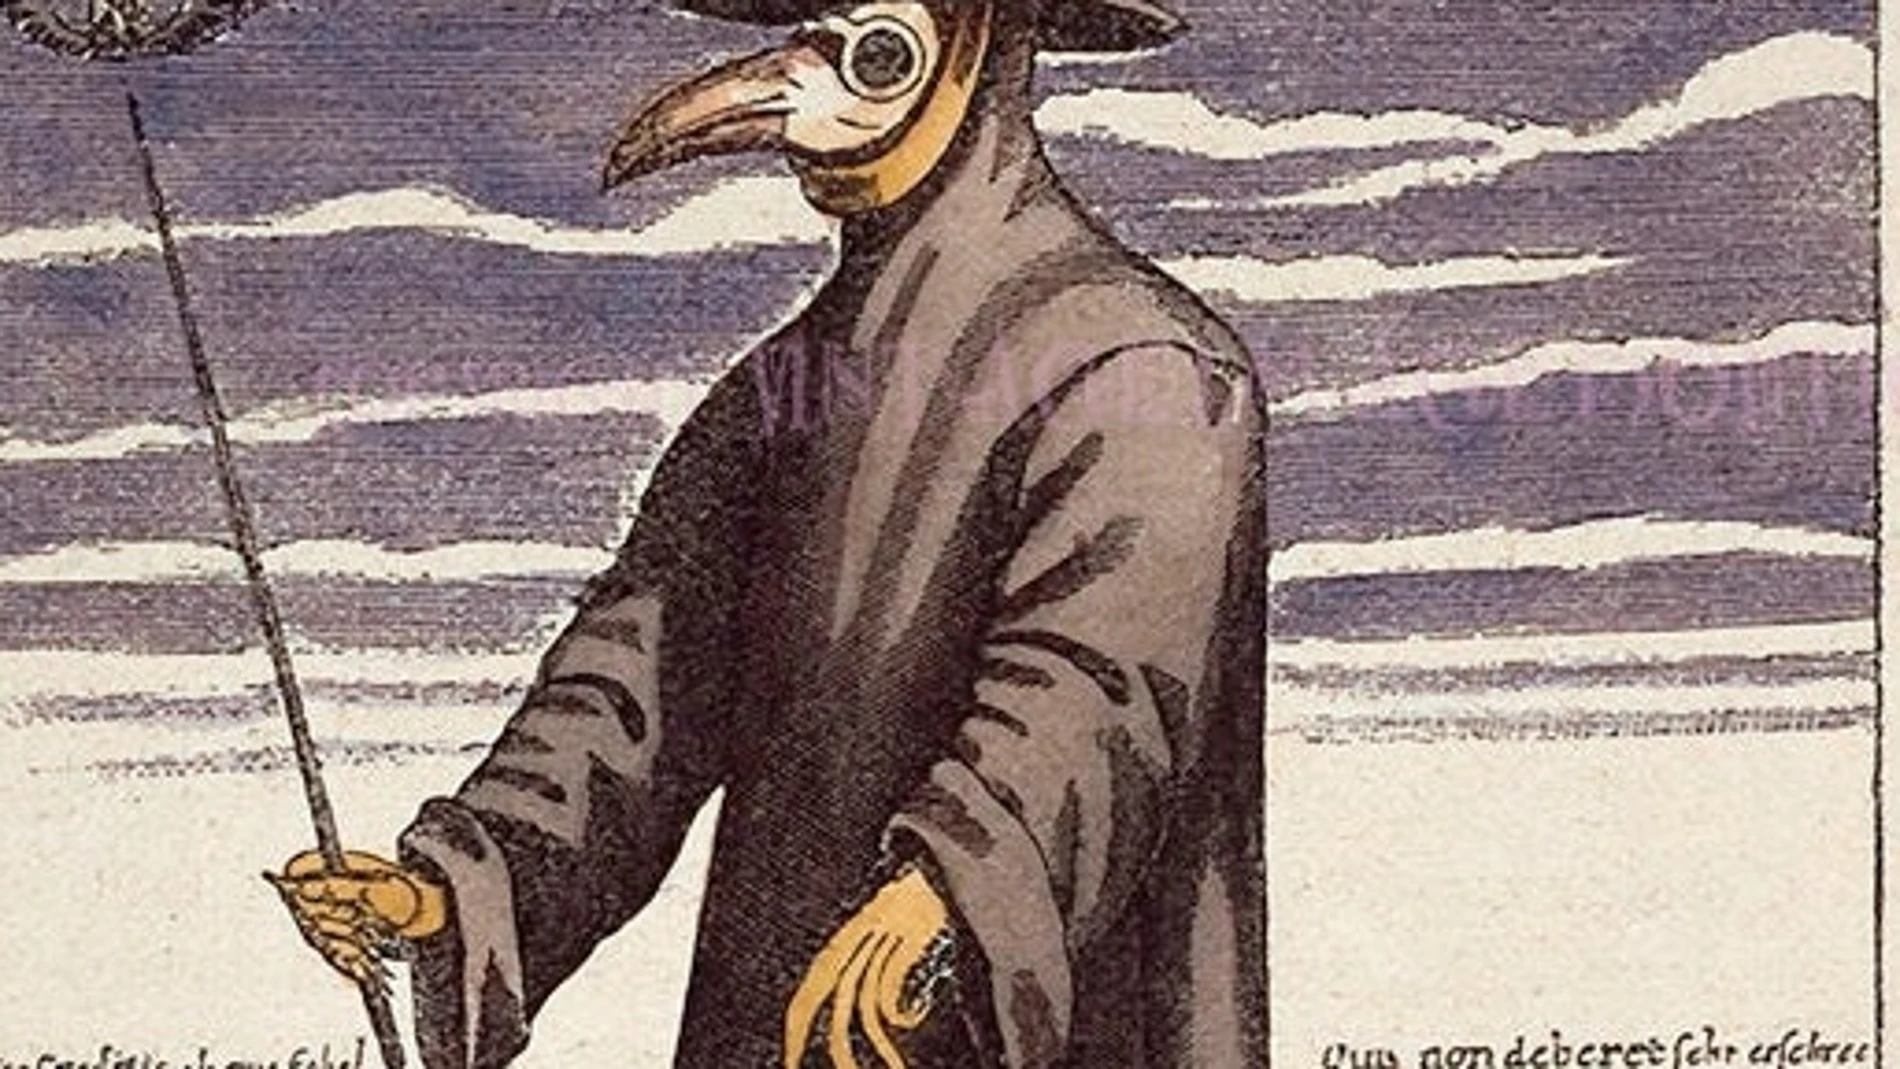 La típica imagen de un médico veneciano protegido para atender enfermos con la peste